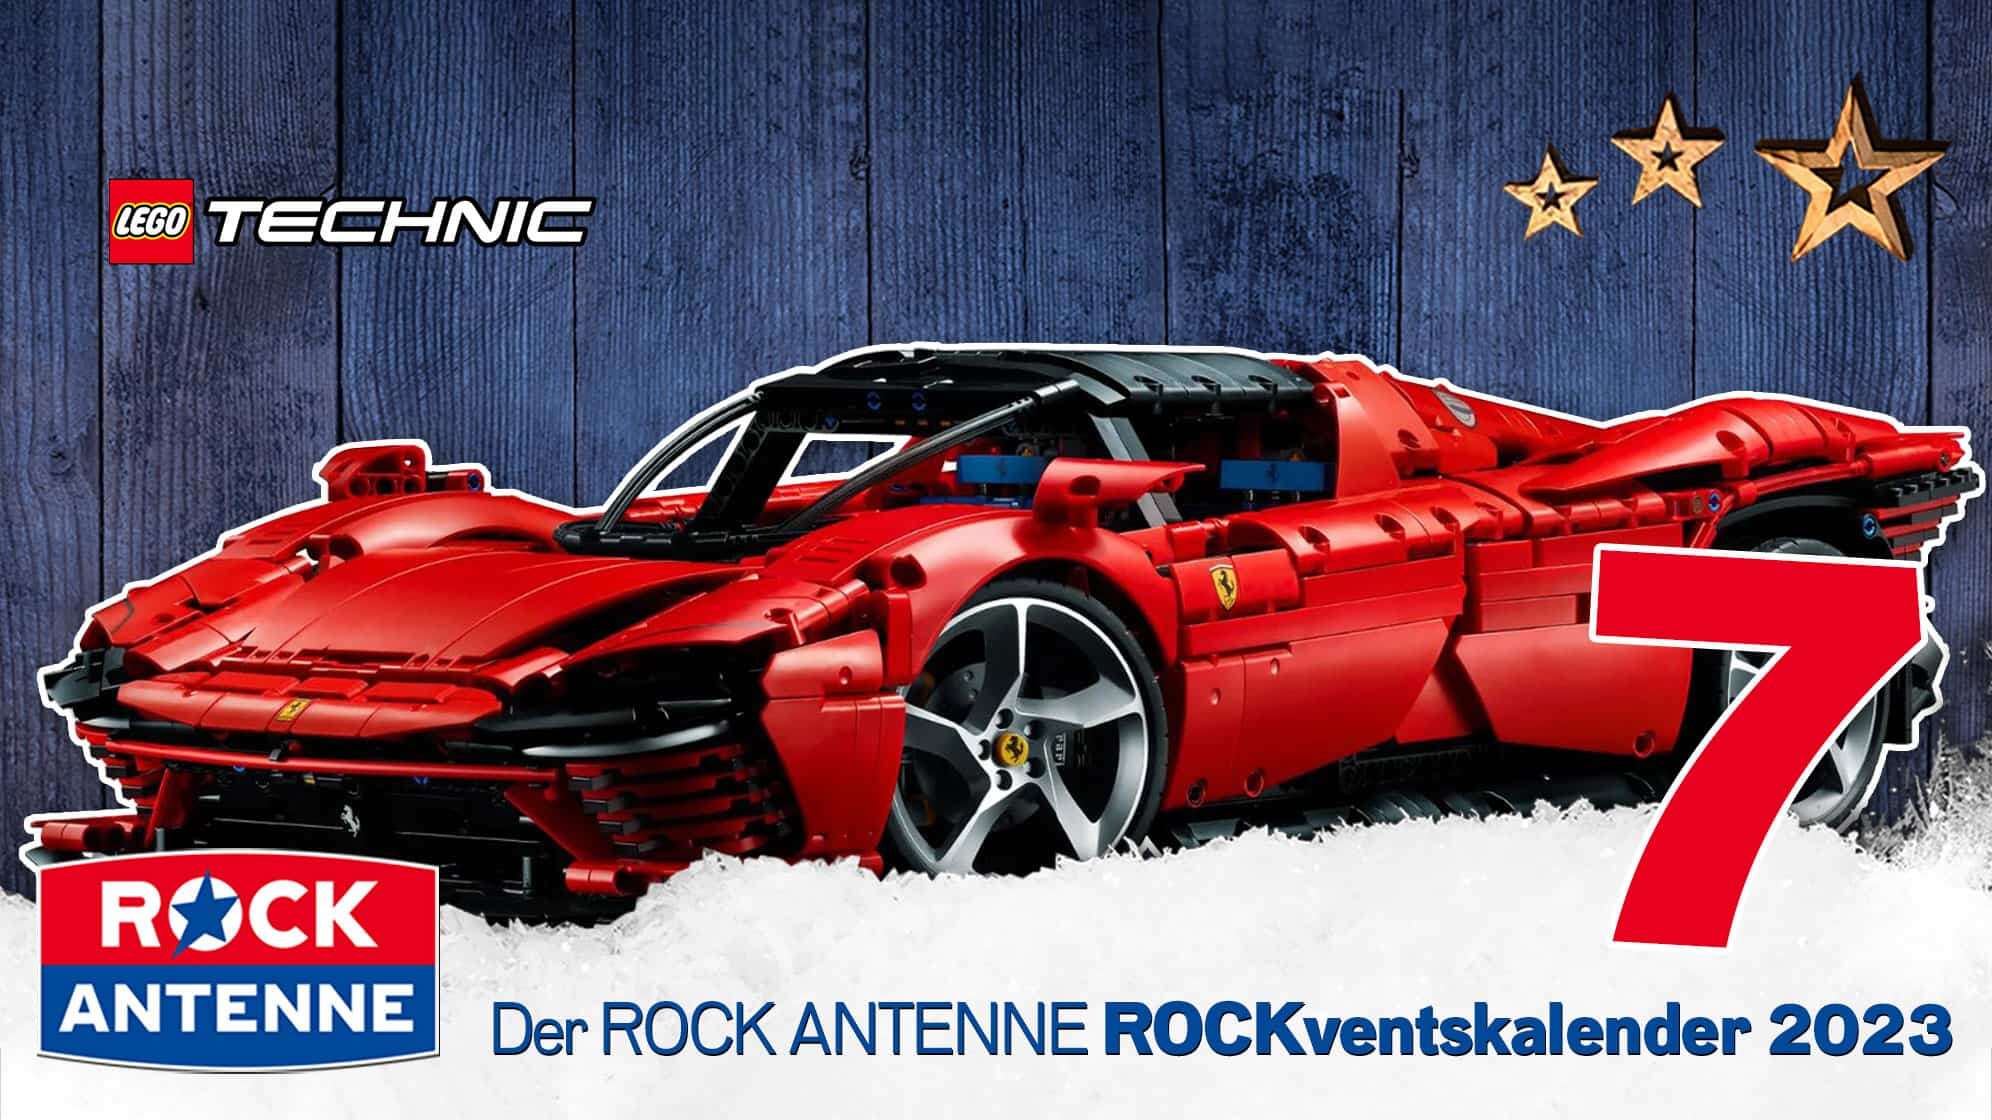 ROCK ANTENNE ROCKventskalender Türchen 7: Ein Modell Ferrari der LEGO Technik Reihe